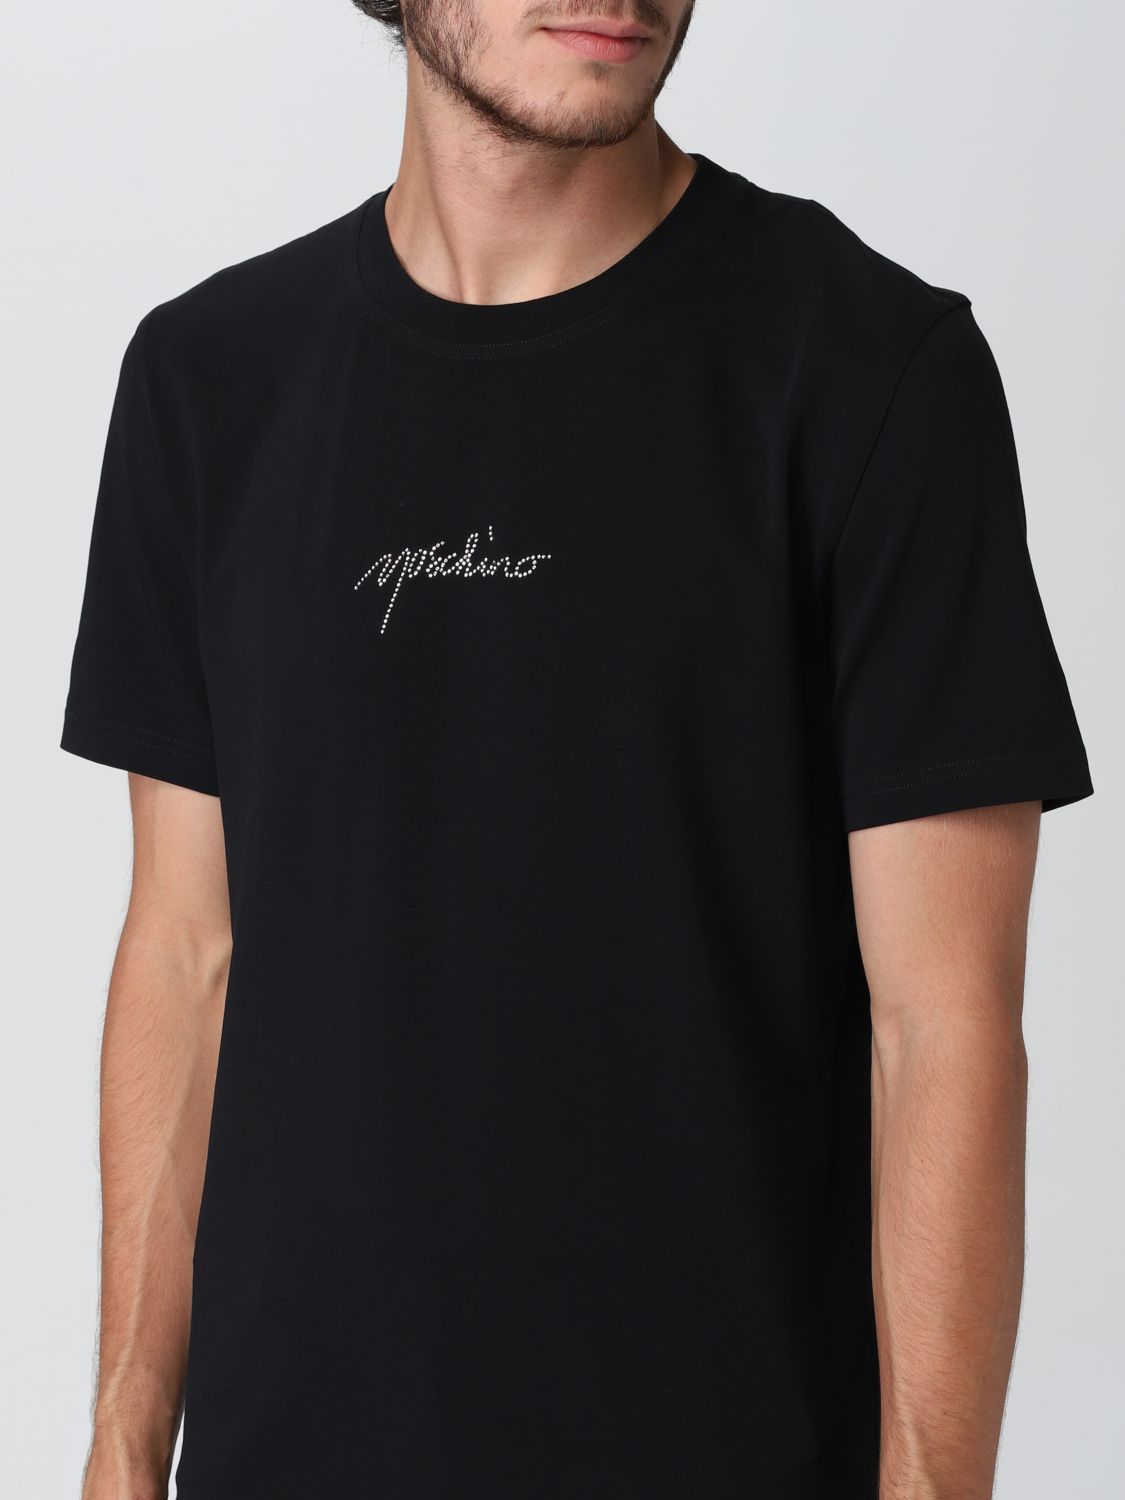 Tシャツ モスキーノ: Tシャツ Moschino Couture メンズ ブラック 3